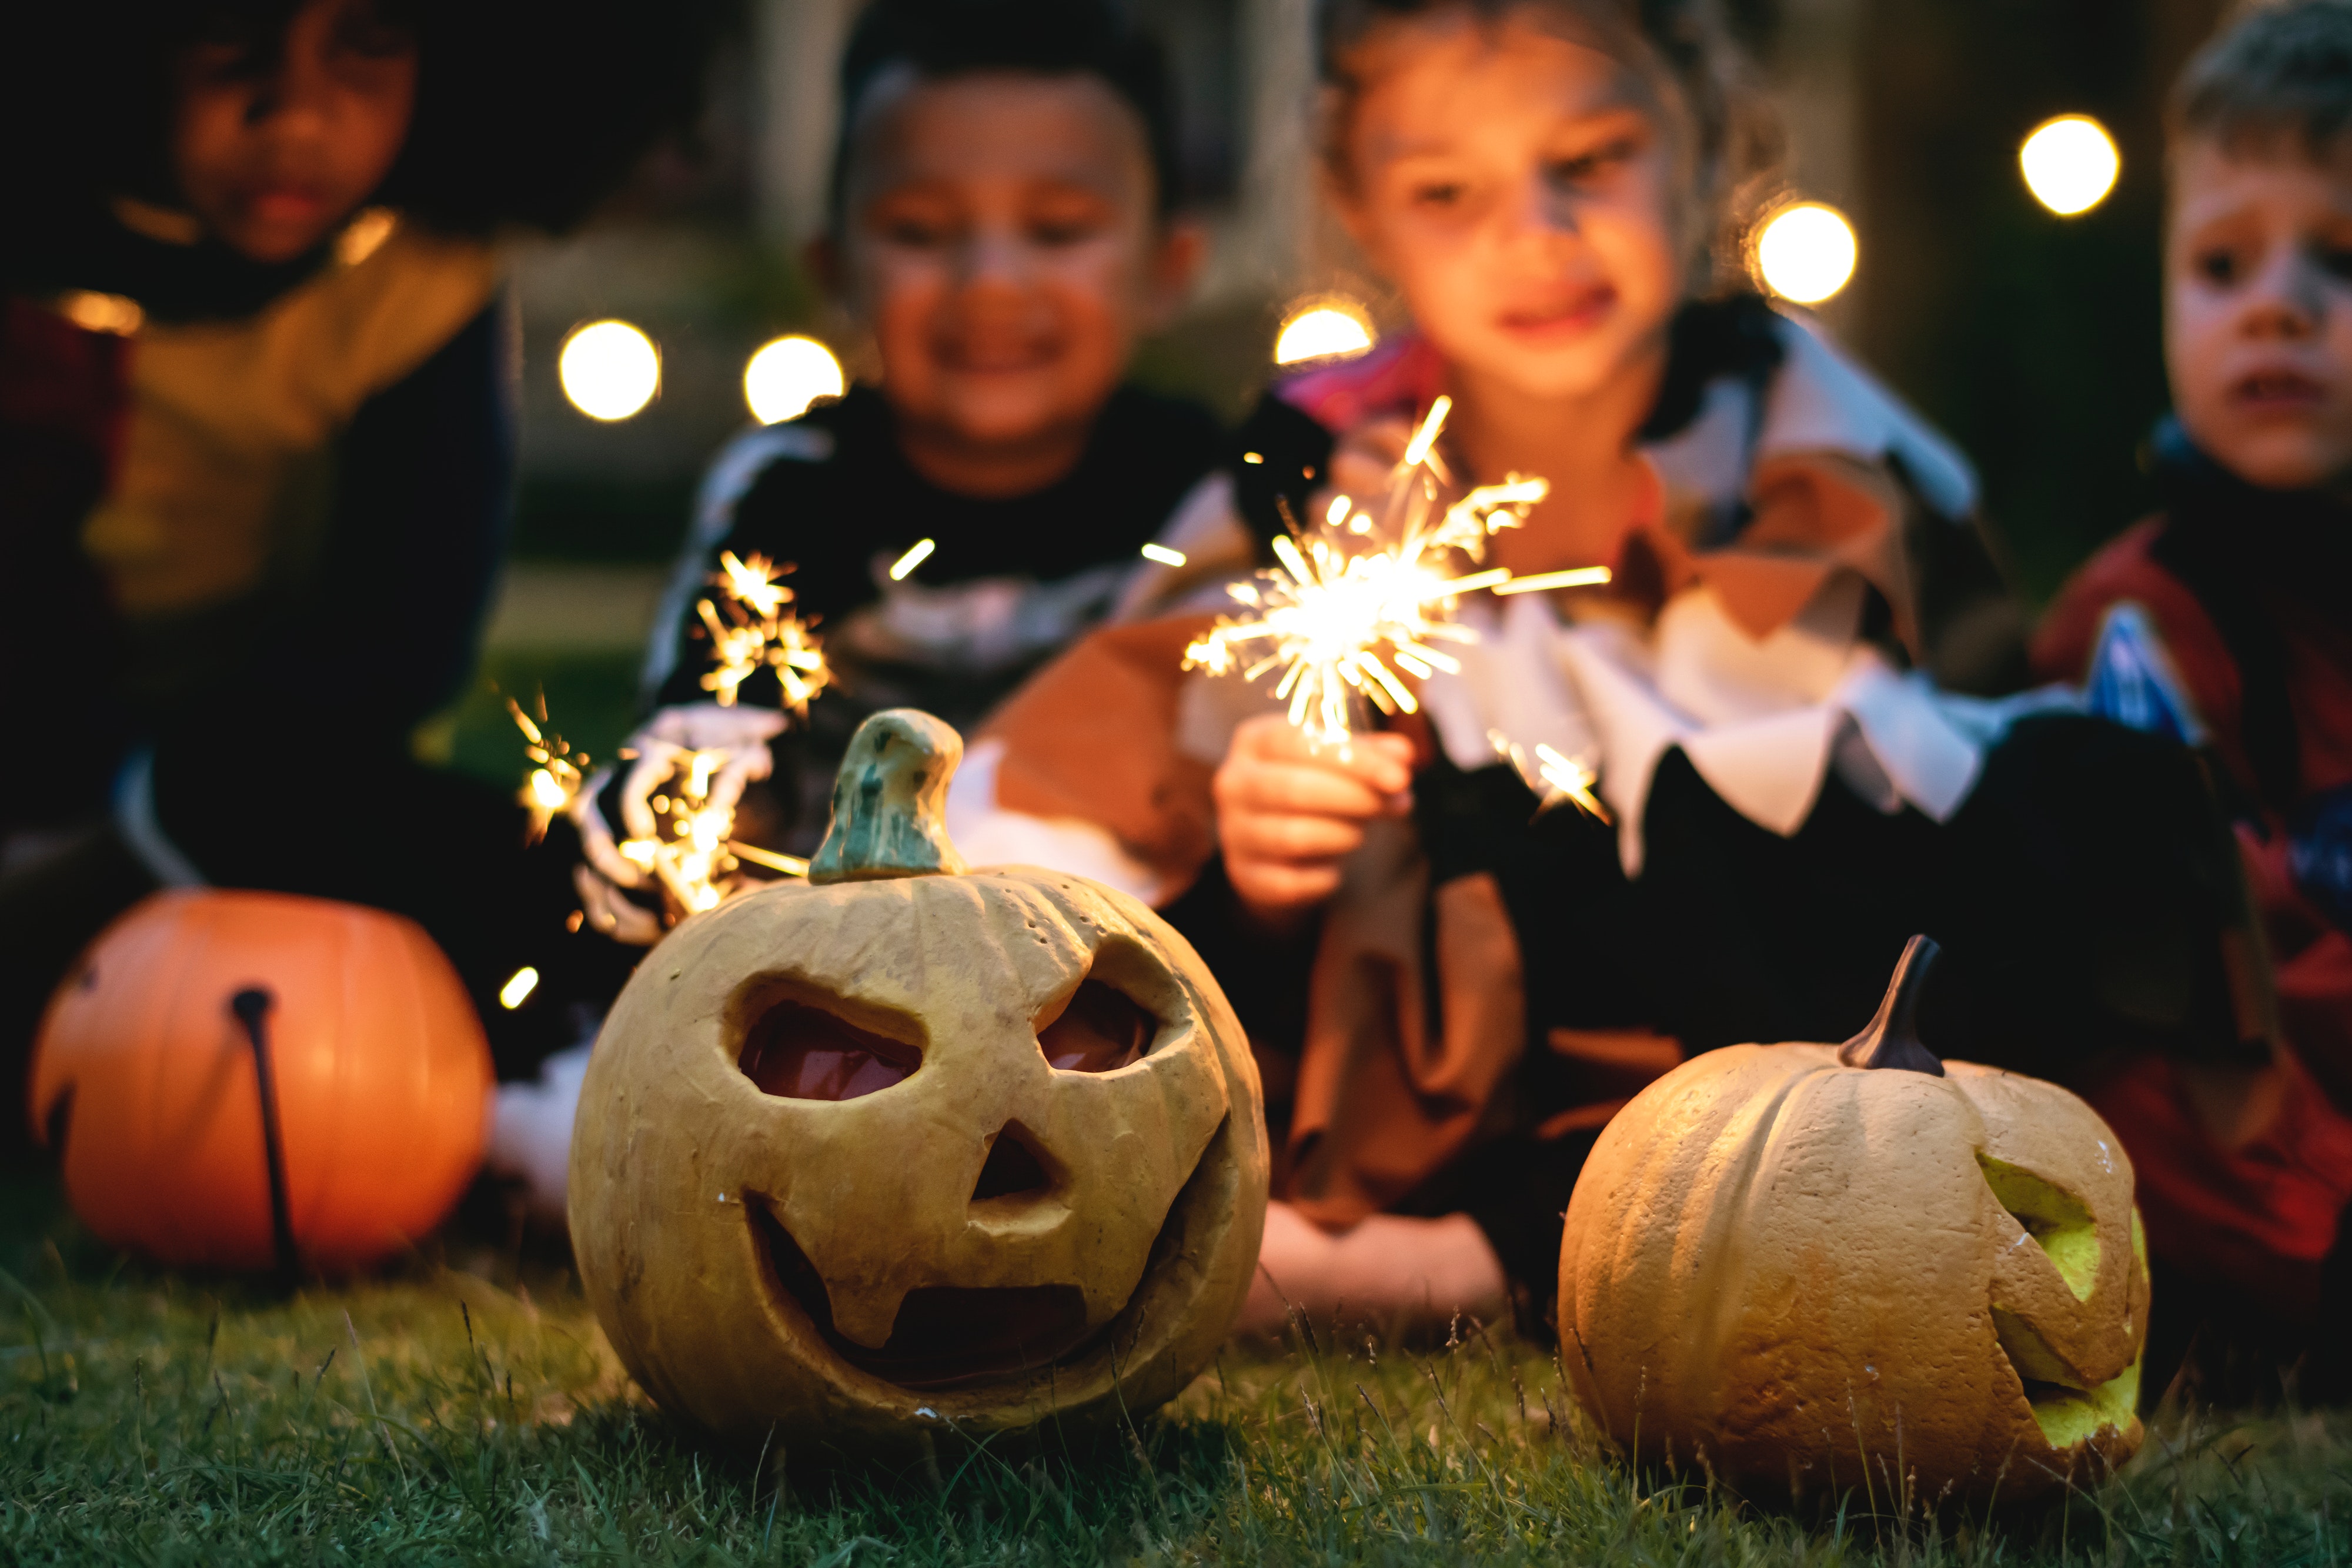 Festa de Halloween: veja ideias de decoração e fantasias!